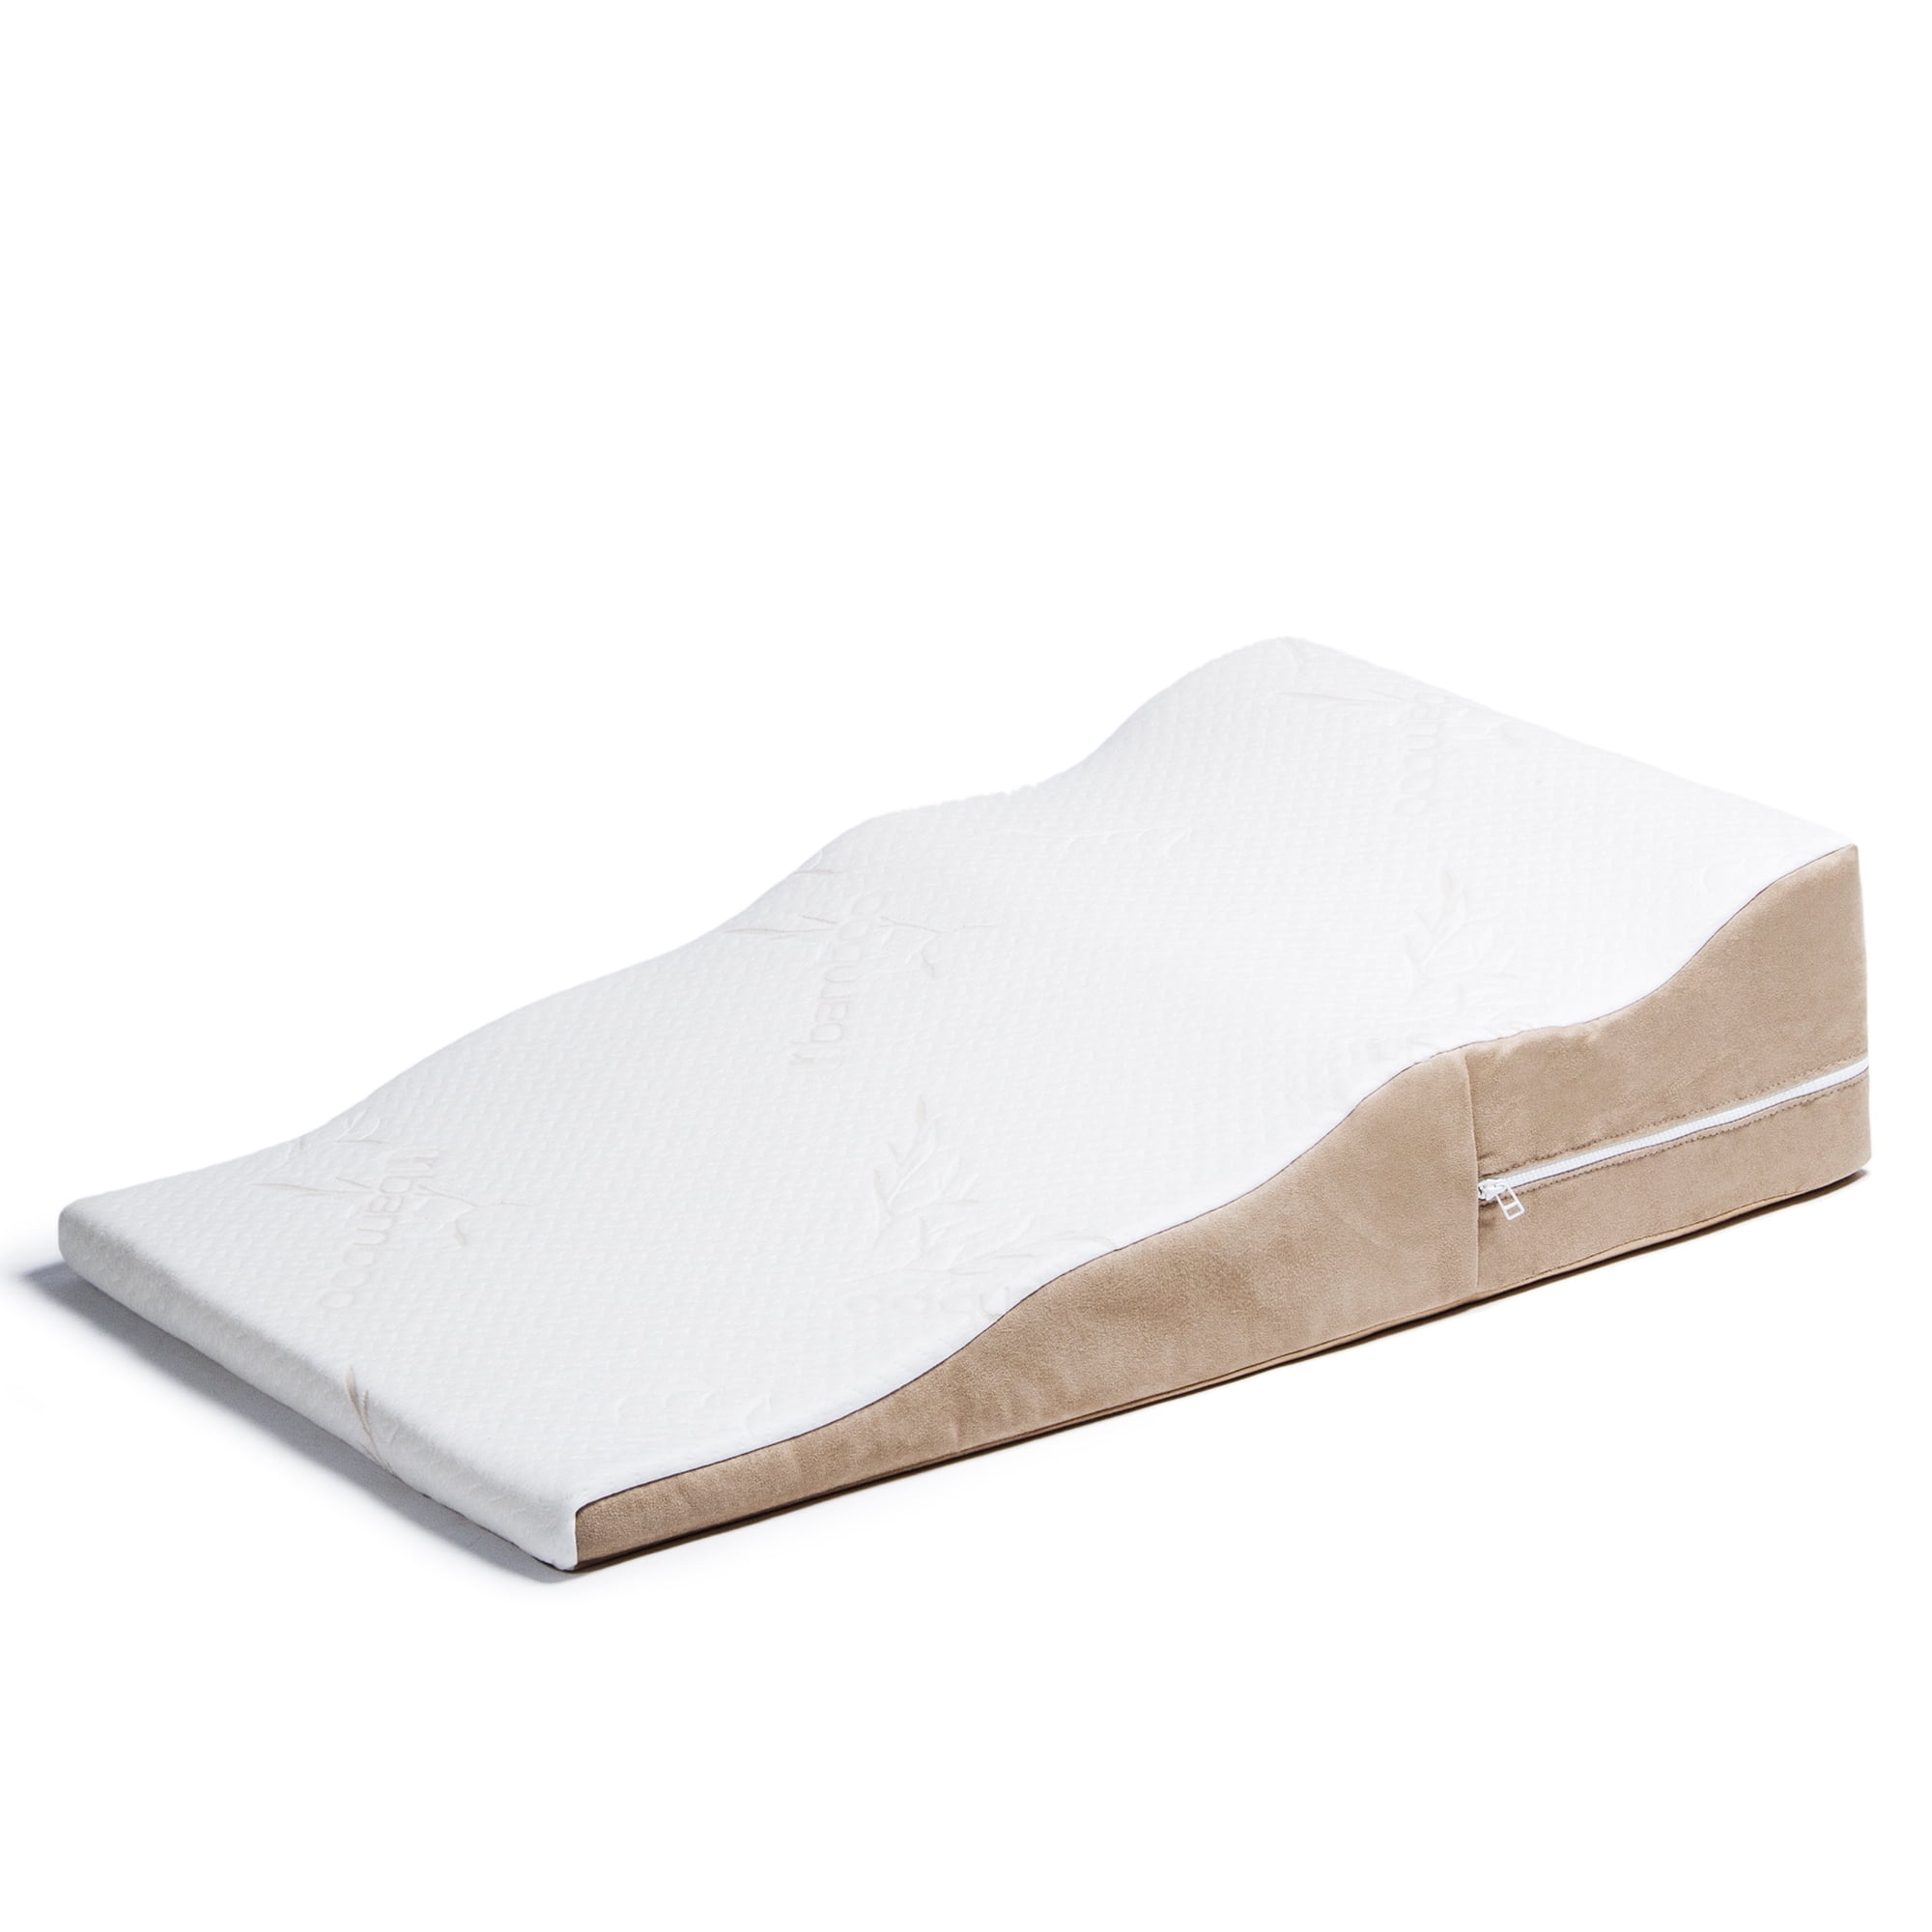 RELAX Wavy Inclined Side-Sleeper Memory Foam Wedge Pillow